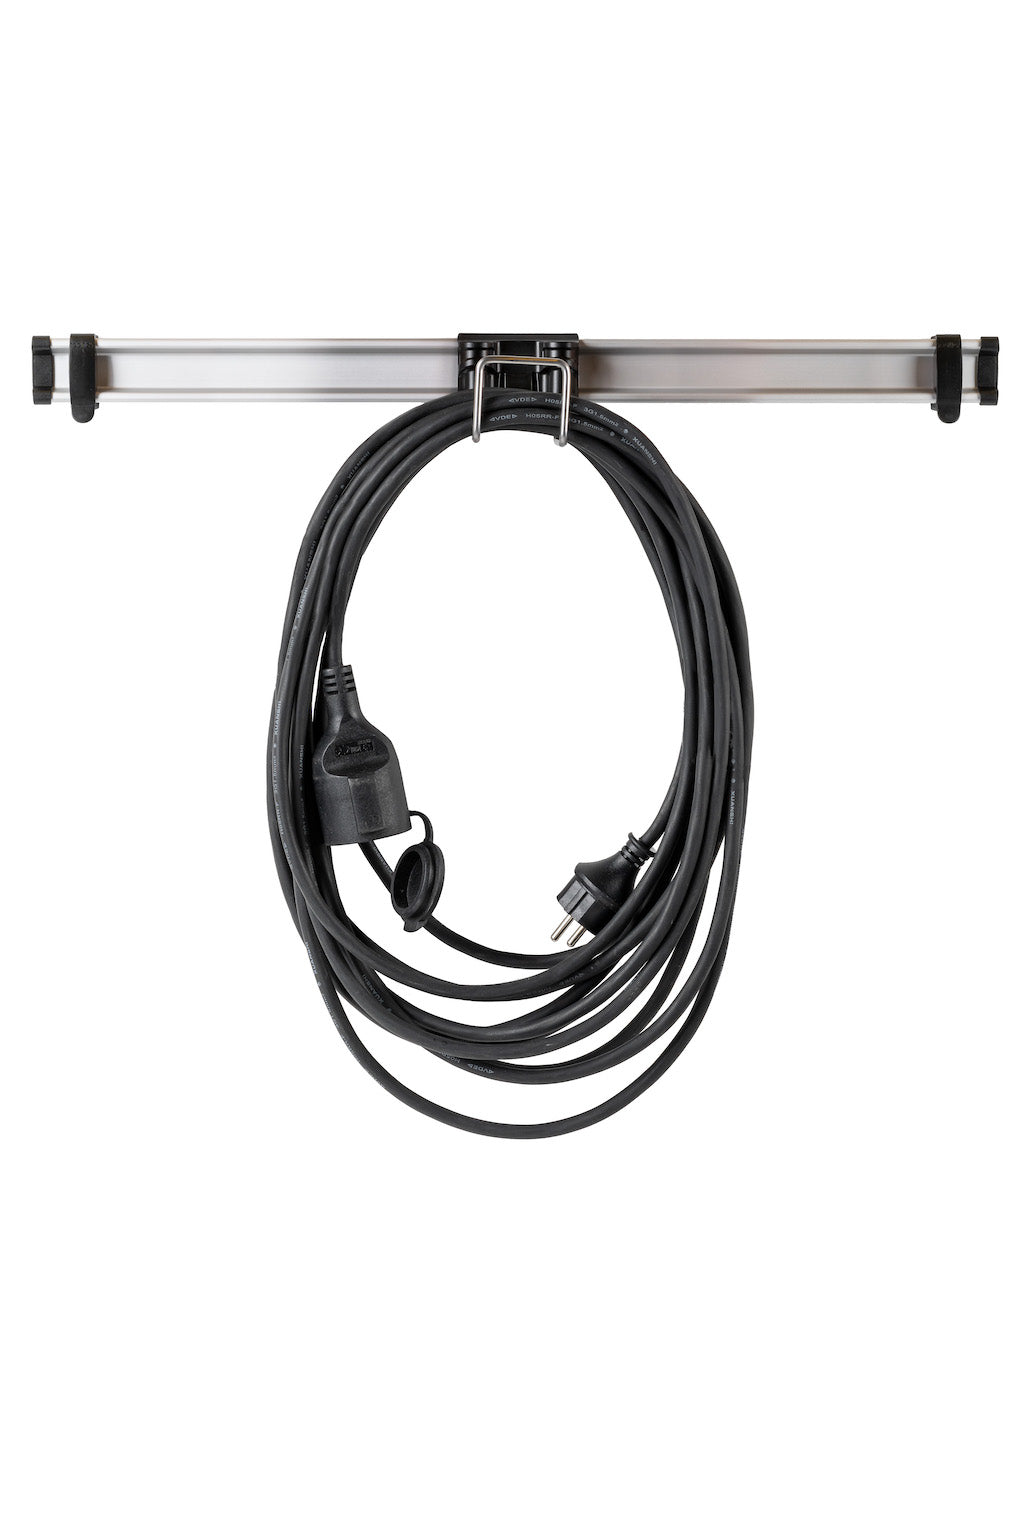 Support utilitaire pour cordon électrique Toolflex One - Noir